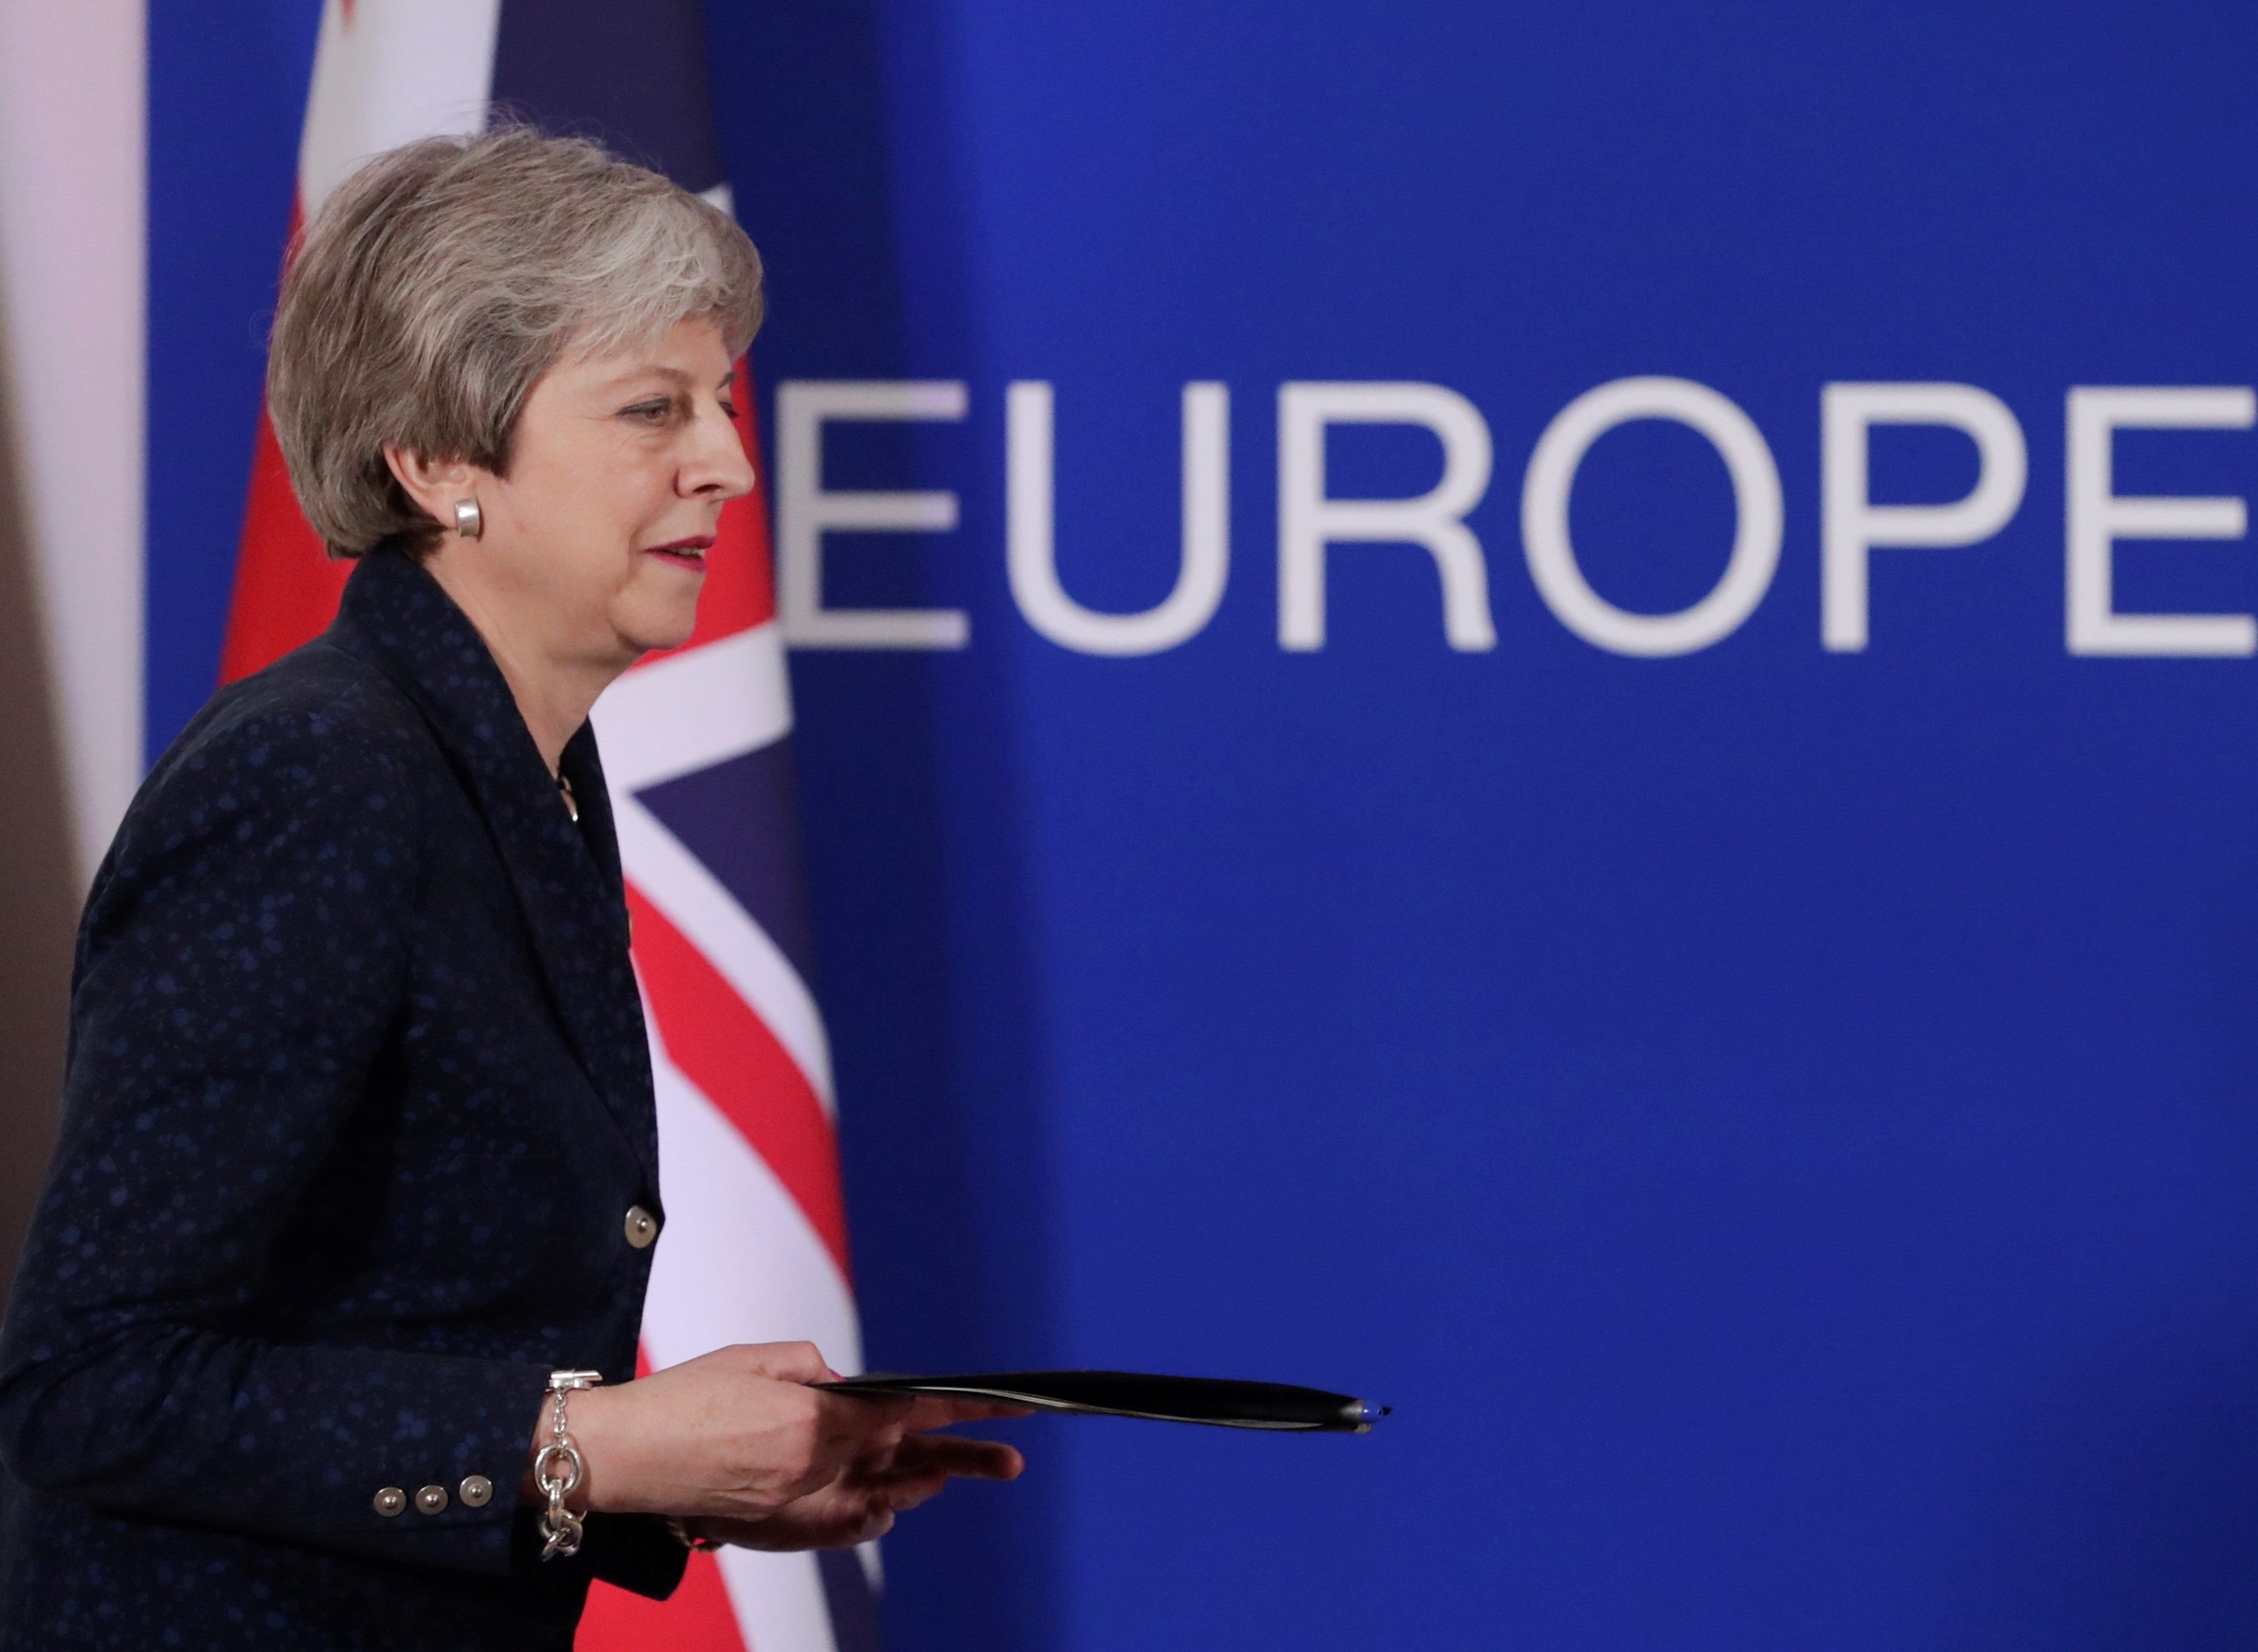 La UE aprova una pròrroga del Brexit amb condicions per a May